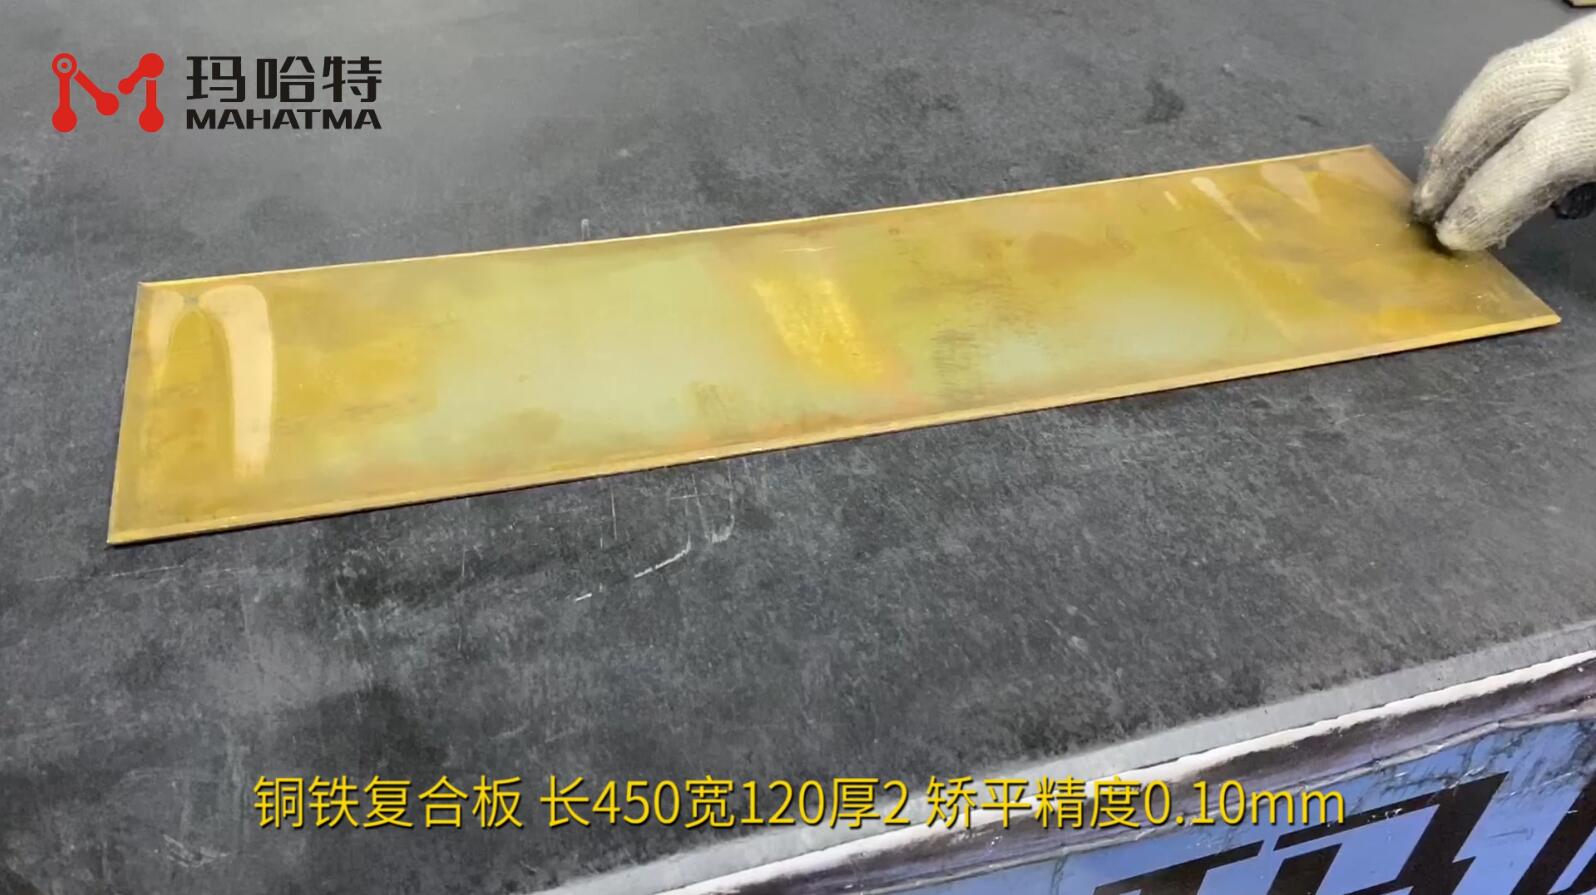  铜铁复合板 MHT50-1300 长方形 长450宽120厚2 矫平精度0.10mm